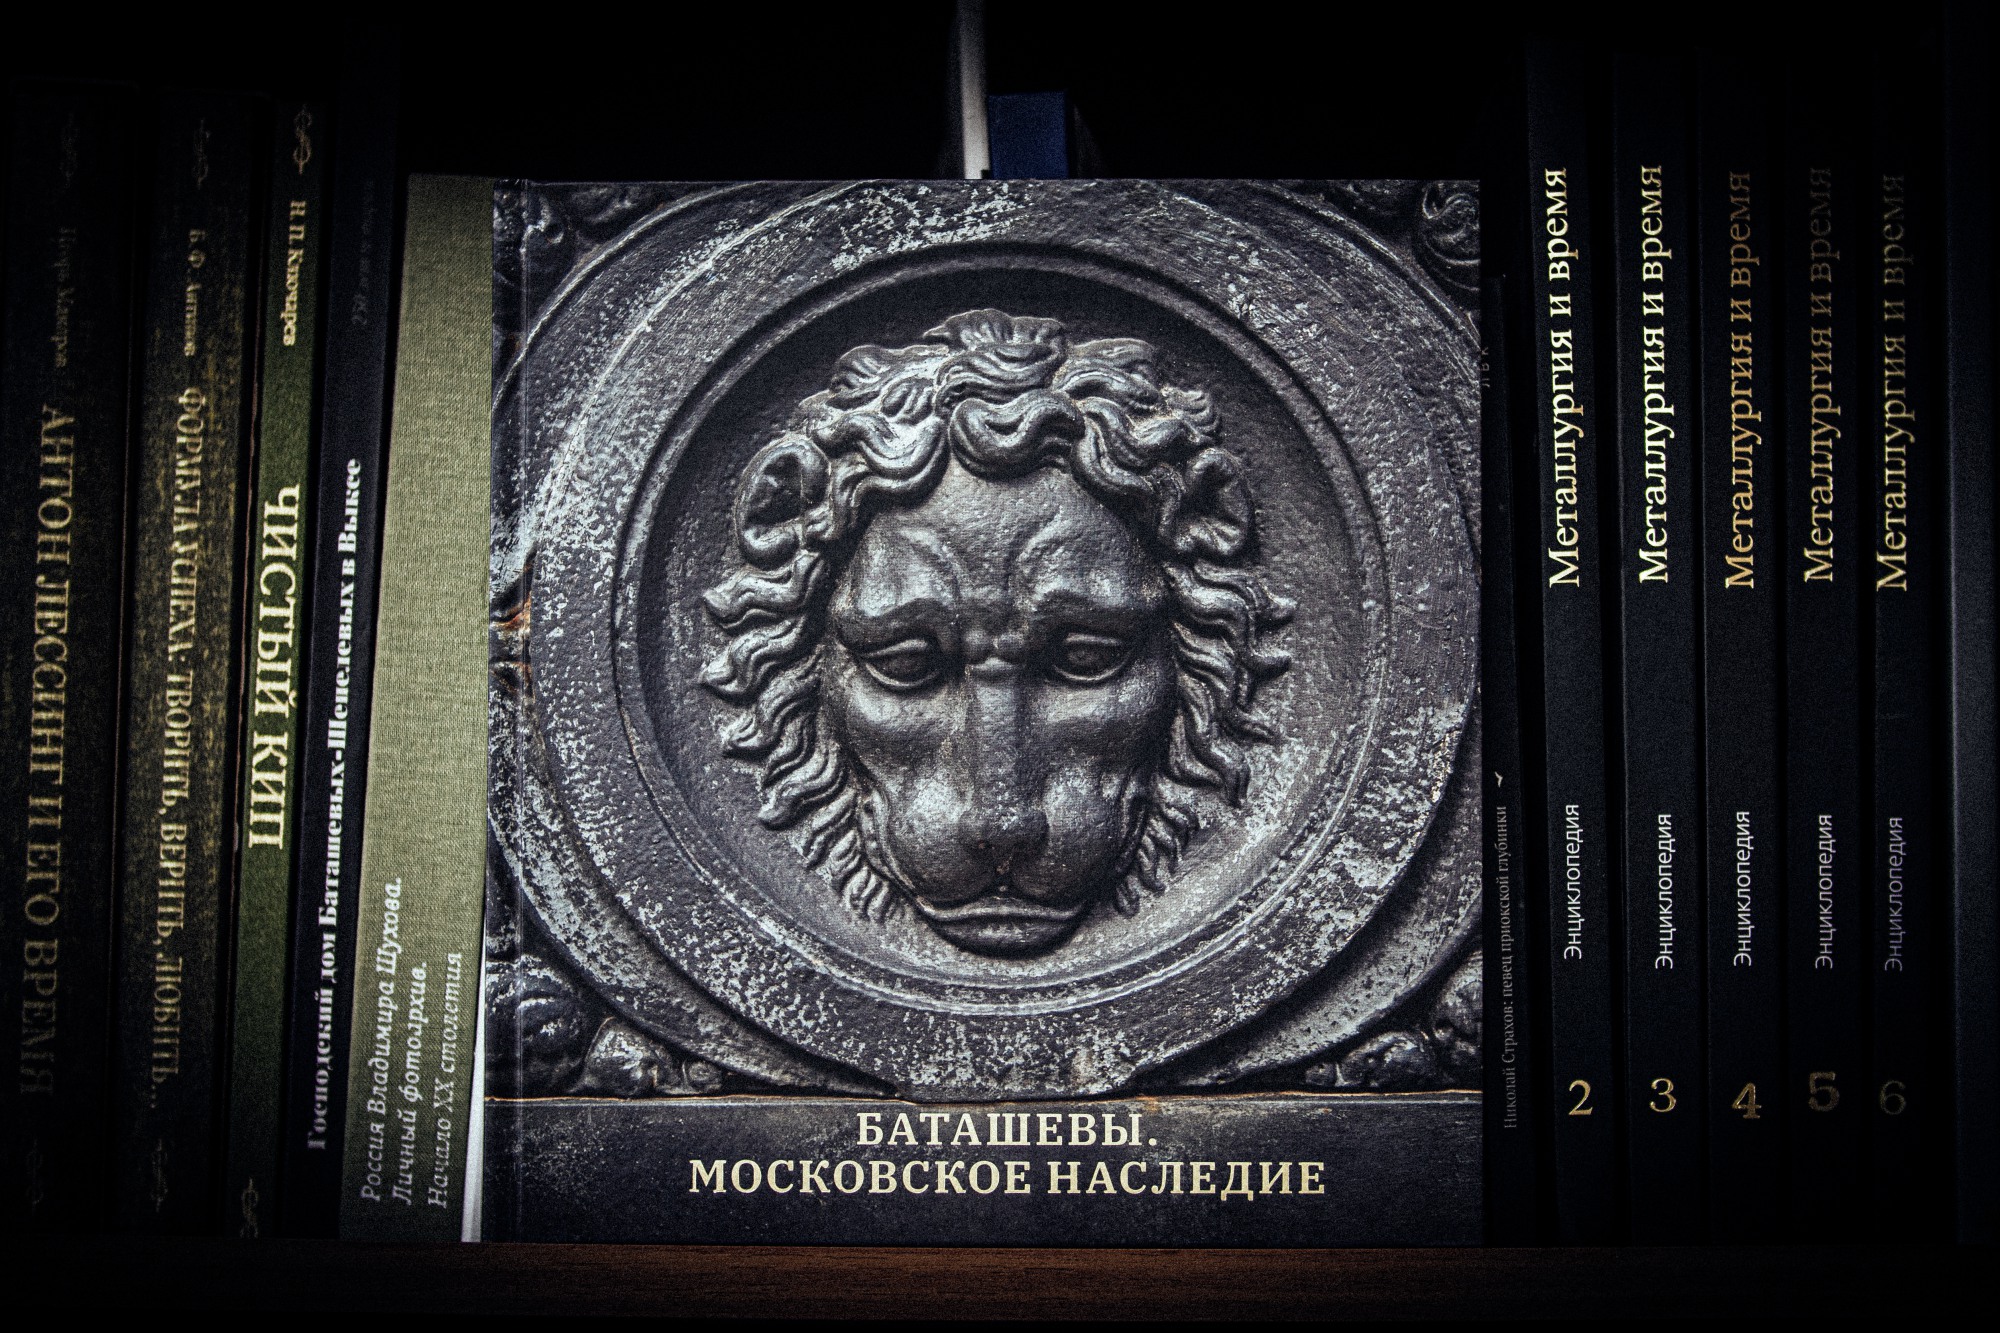 ОМК презентовала книгу о московском наследии братьев Баташёвых